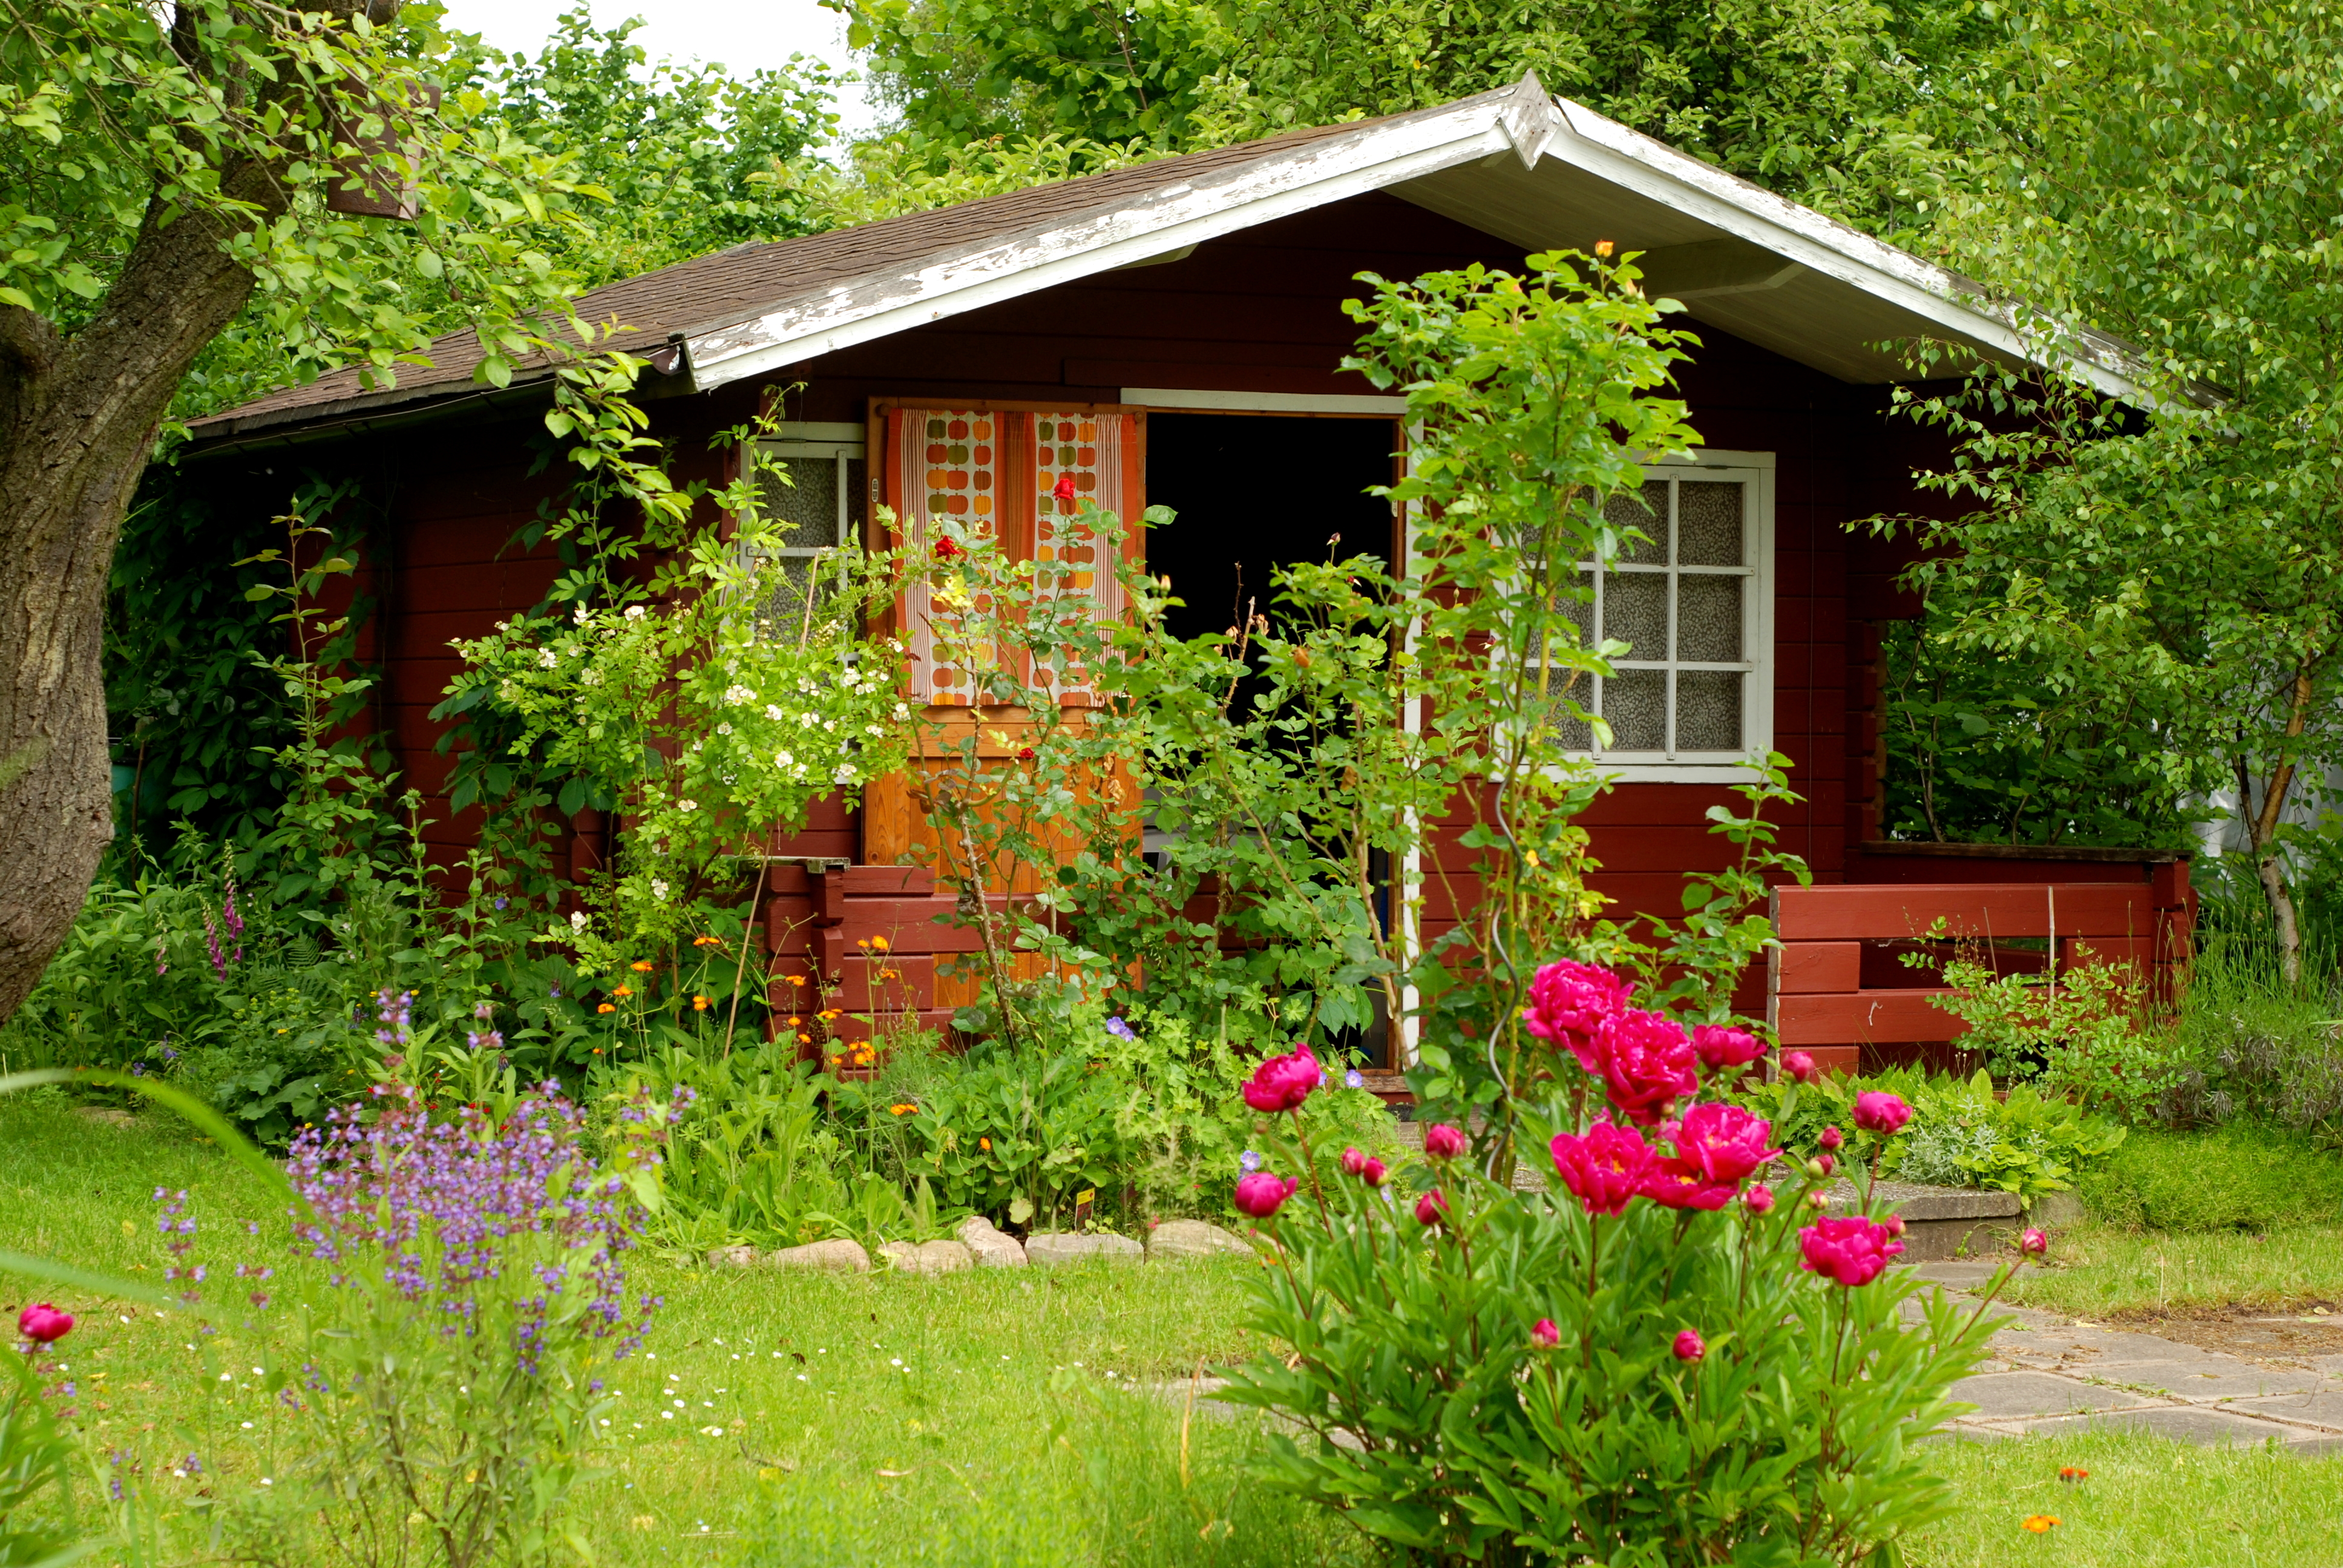 Авито дом на лето. Красивая дача. Дачный домик в саду. Летняя дача. Маленький домик в саду.